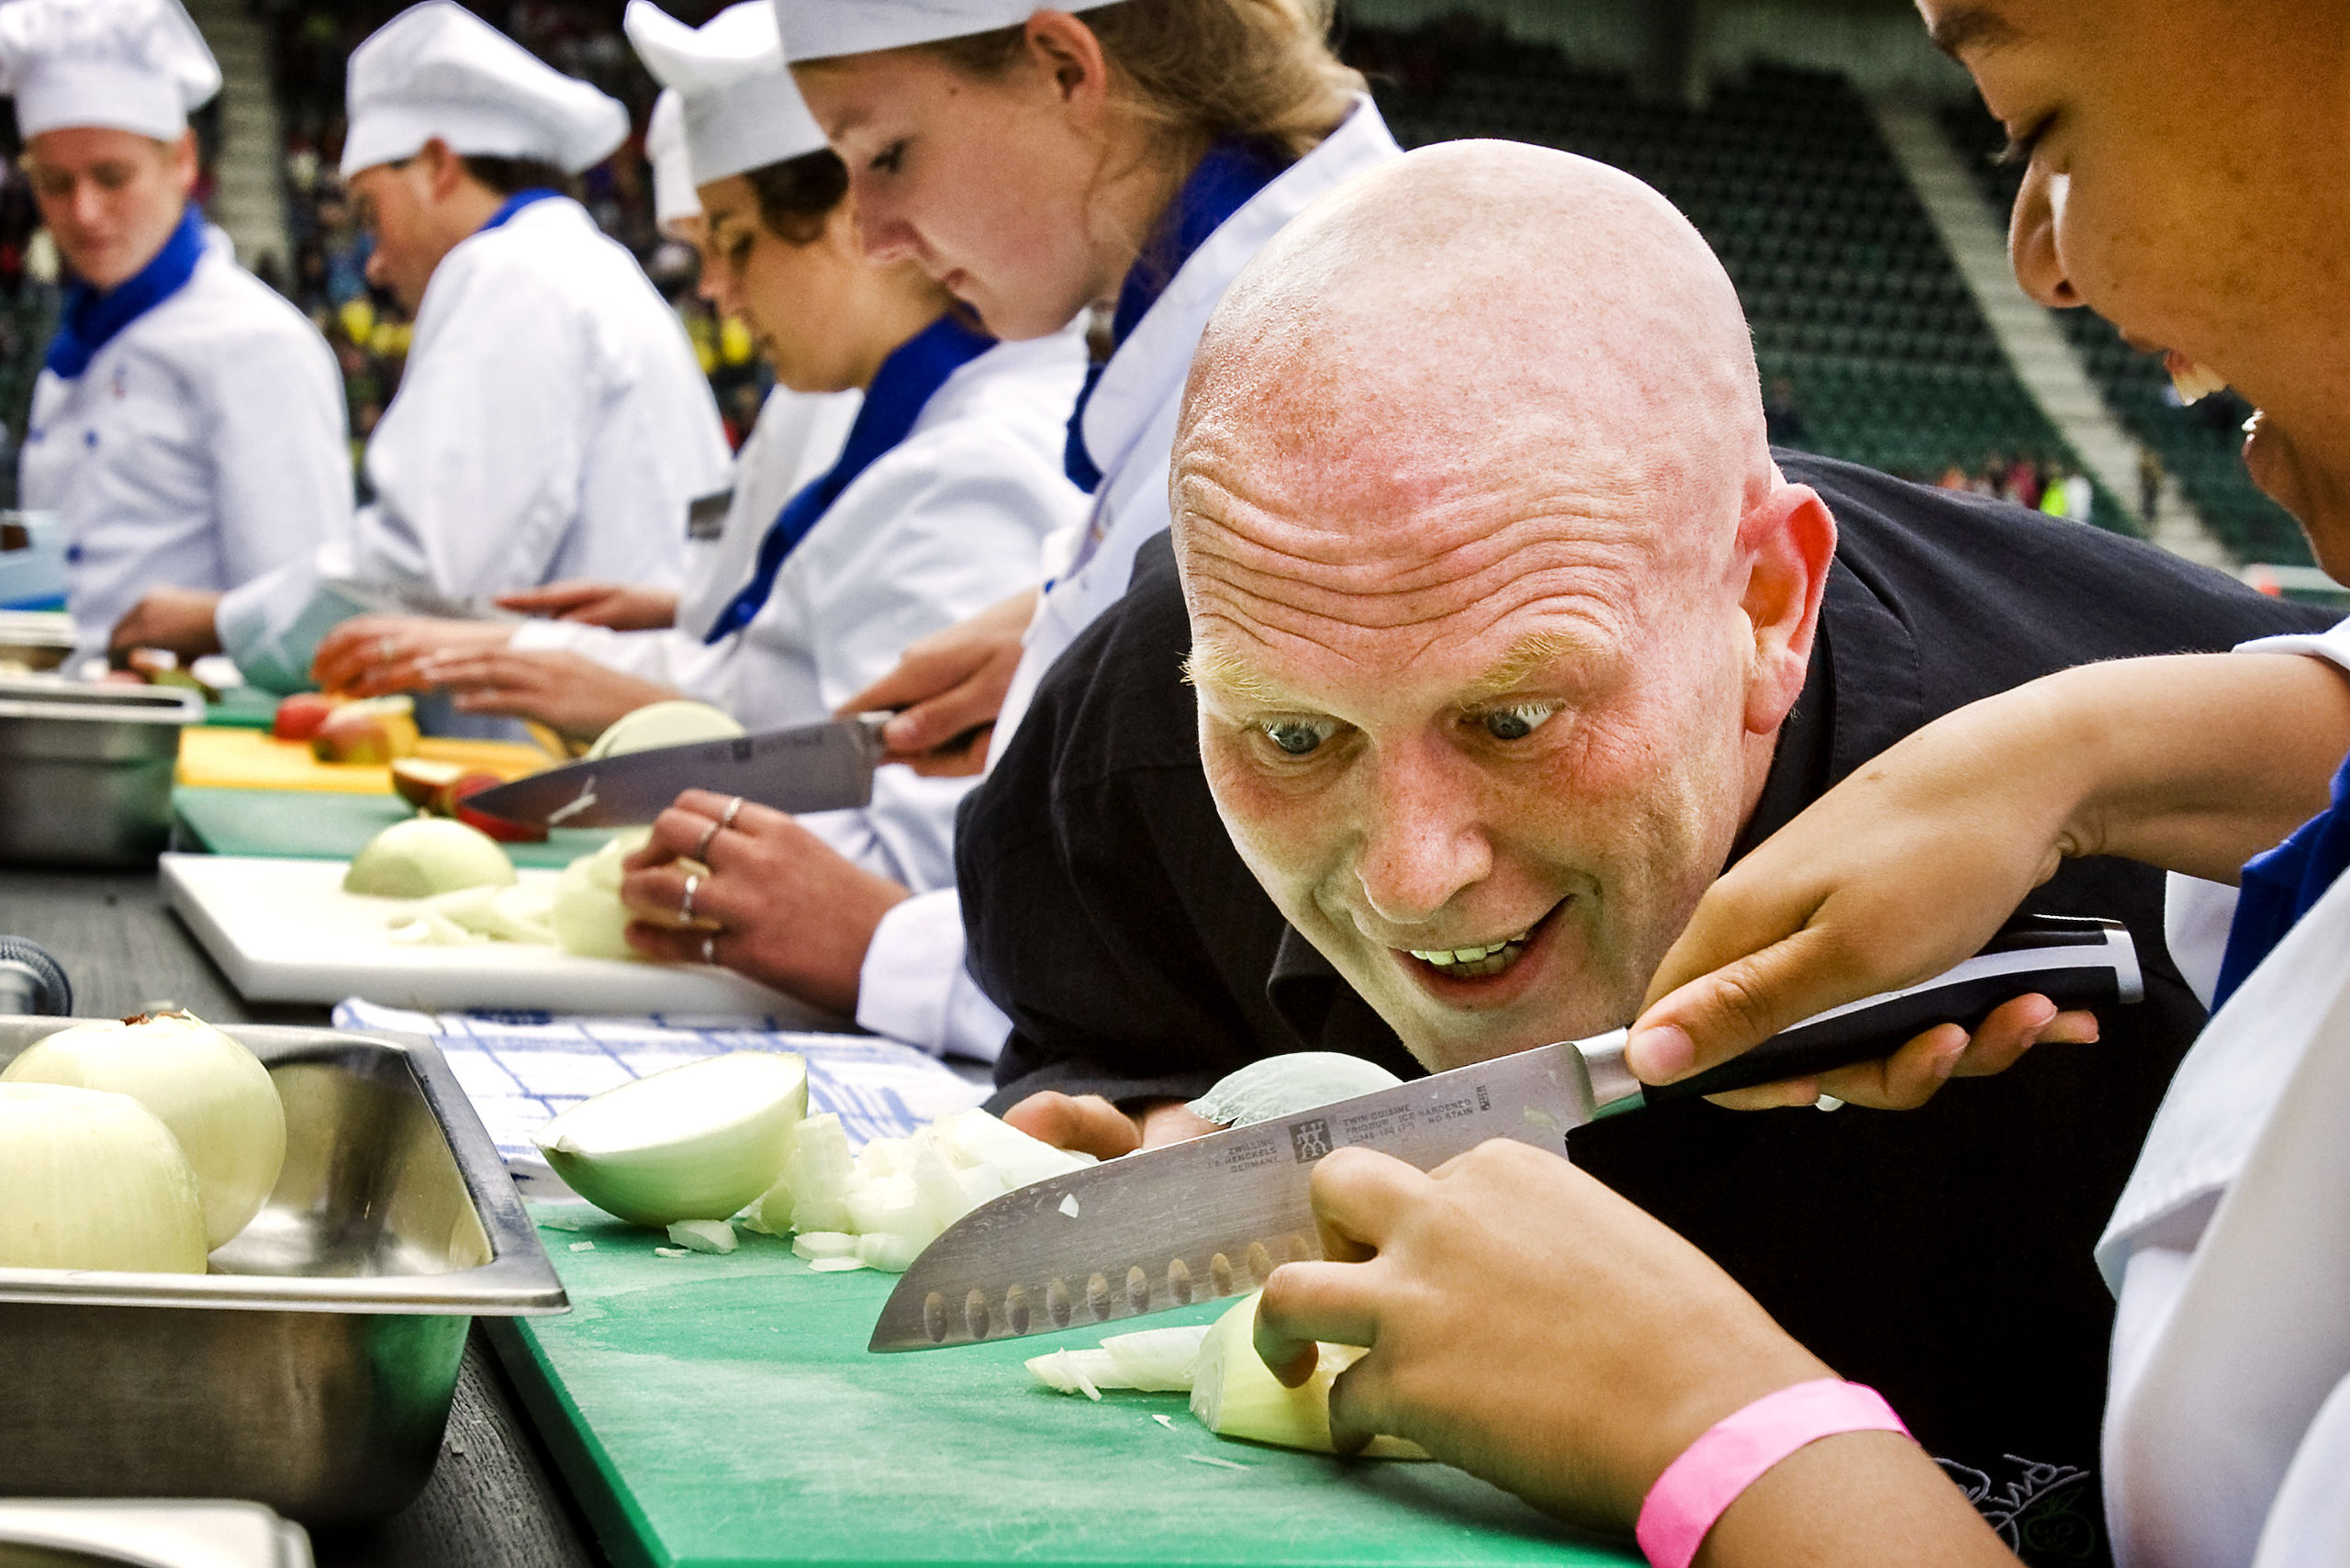 Gastheer is TV-kok en smaakambassadeur Pierre Wind houdt zich vrijdag bezig met vers voedsel tijdens het evenement de Grootste Keuken van Nederland in het ADO-stadion in Den Haag. Het evenement, dat wordt bijgewoond door 8.000 basisscholieren en hun 1.600 begeleiders, wordt gehouden tijdens de Week van de Smaak.